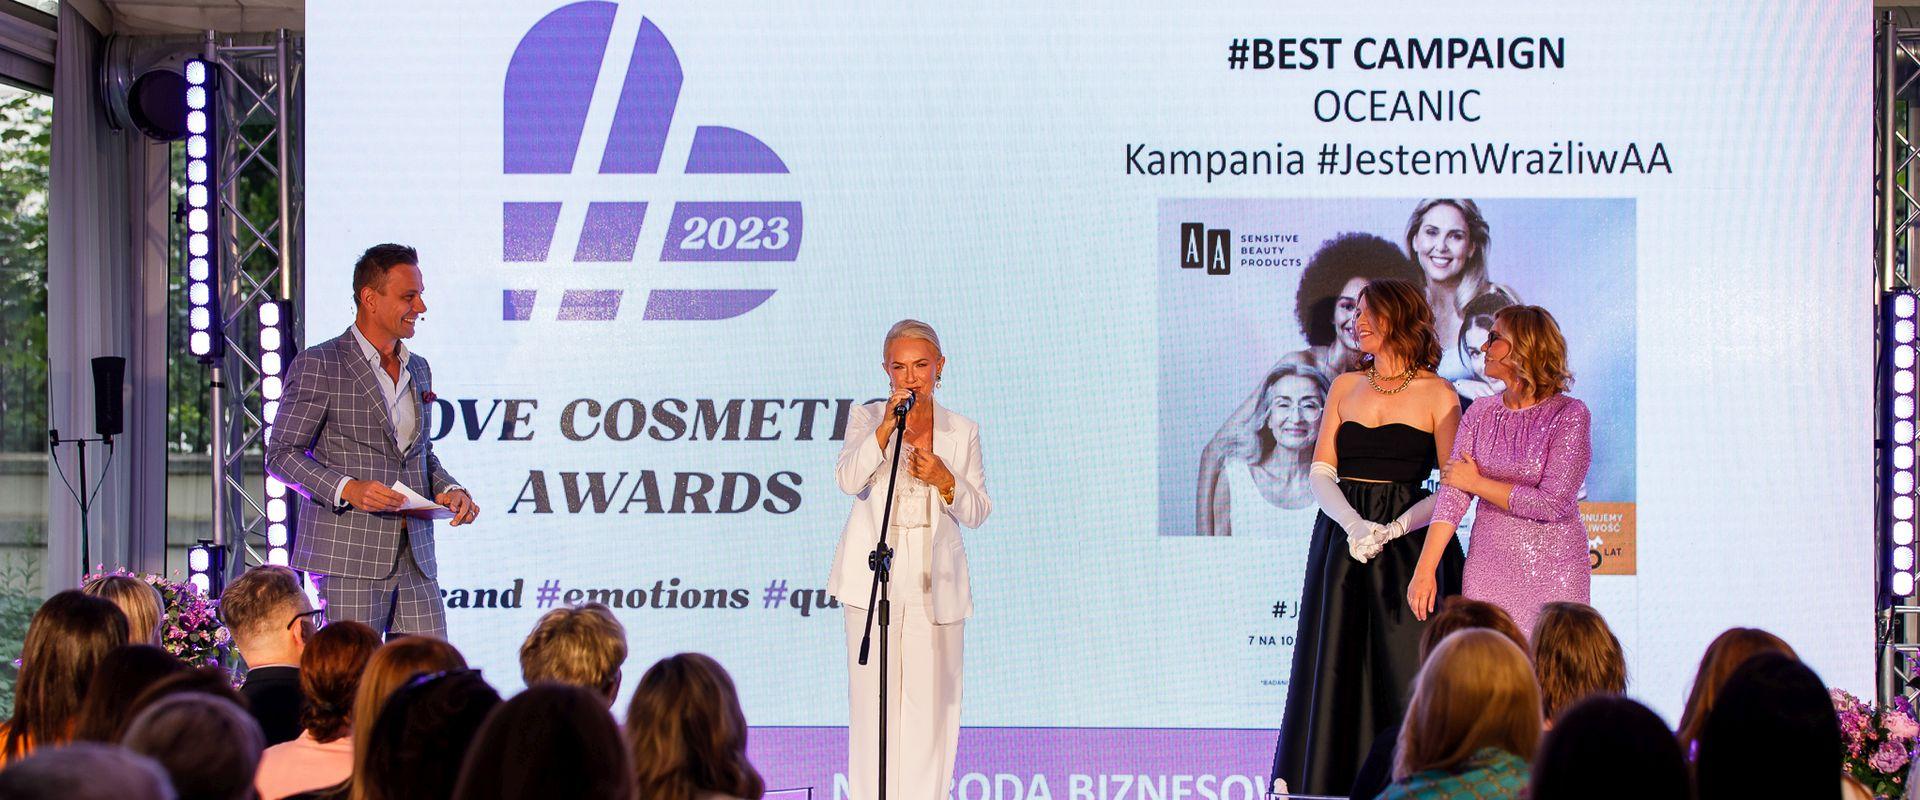 Wrażliwość jest piękna! Love Cosmetics Awards 2023 dla marki AA w kategorii Best Campaign